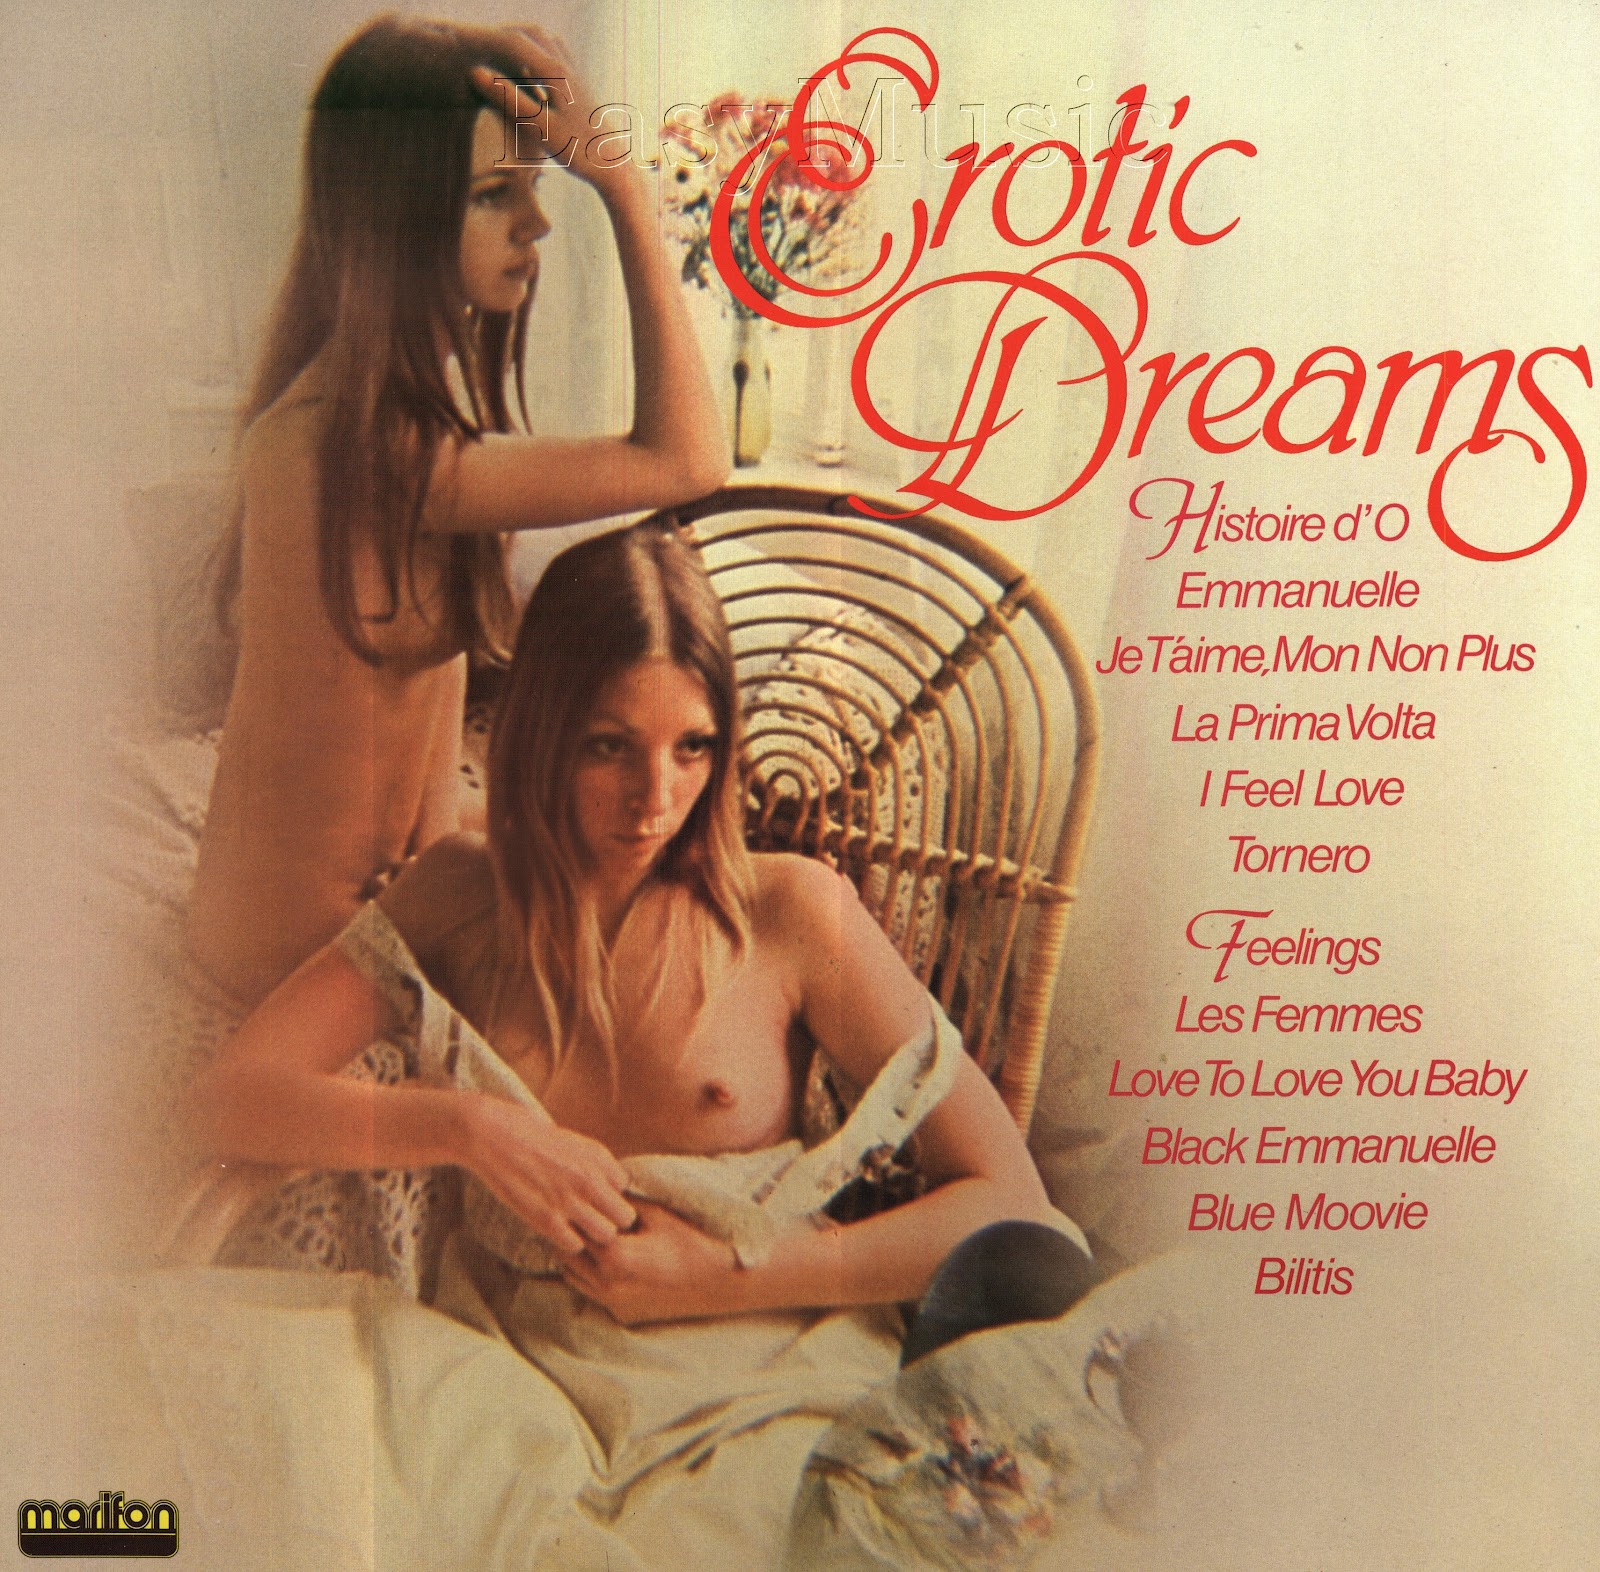 Erotic dreams by aerosmith